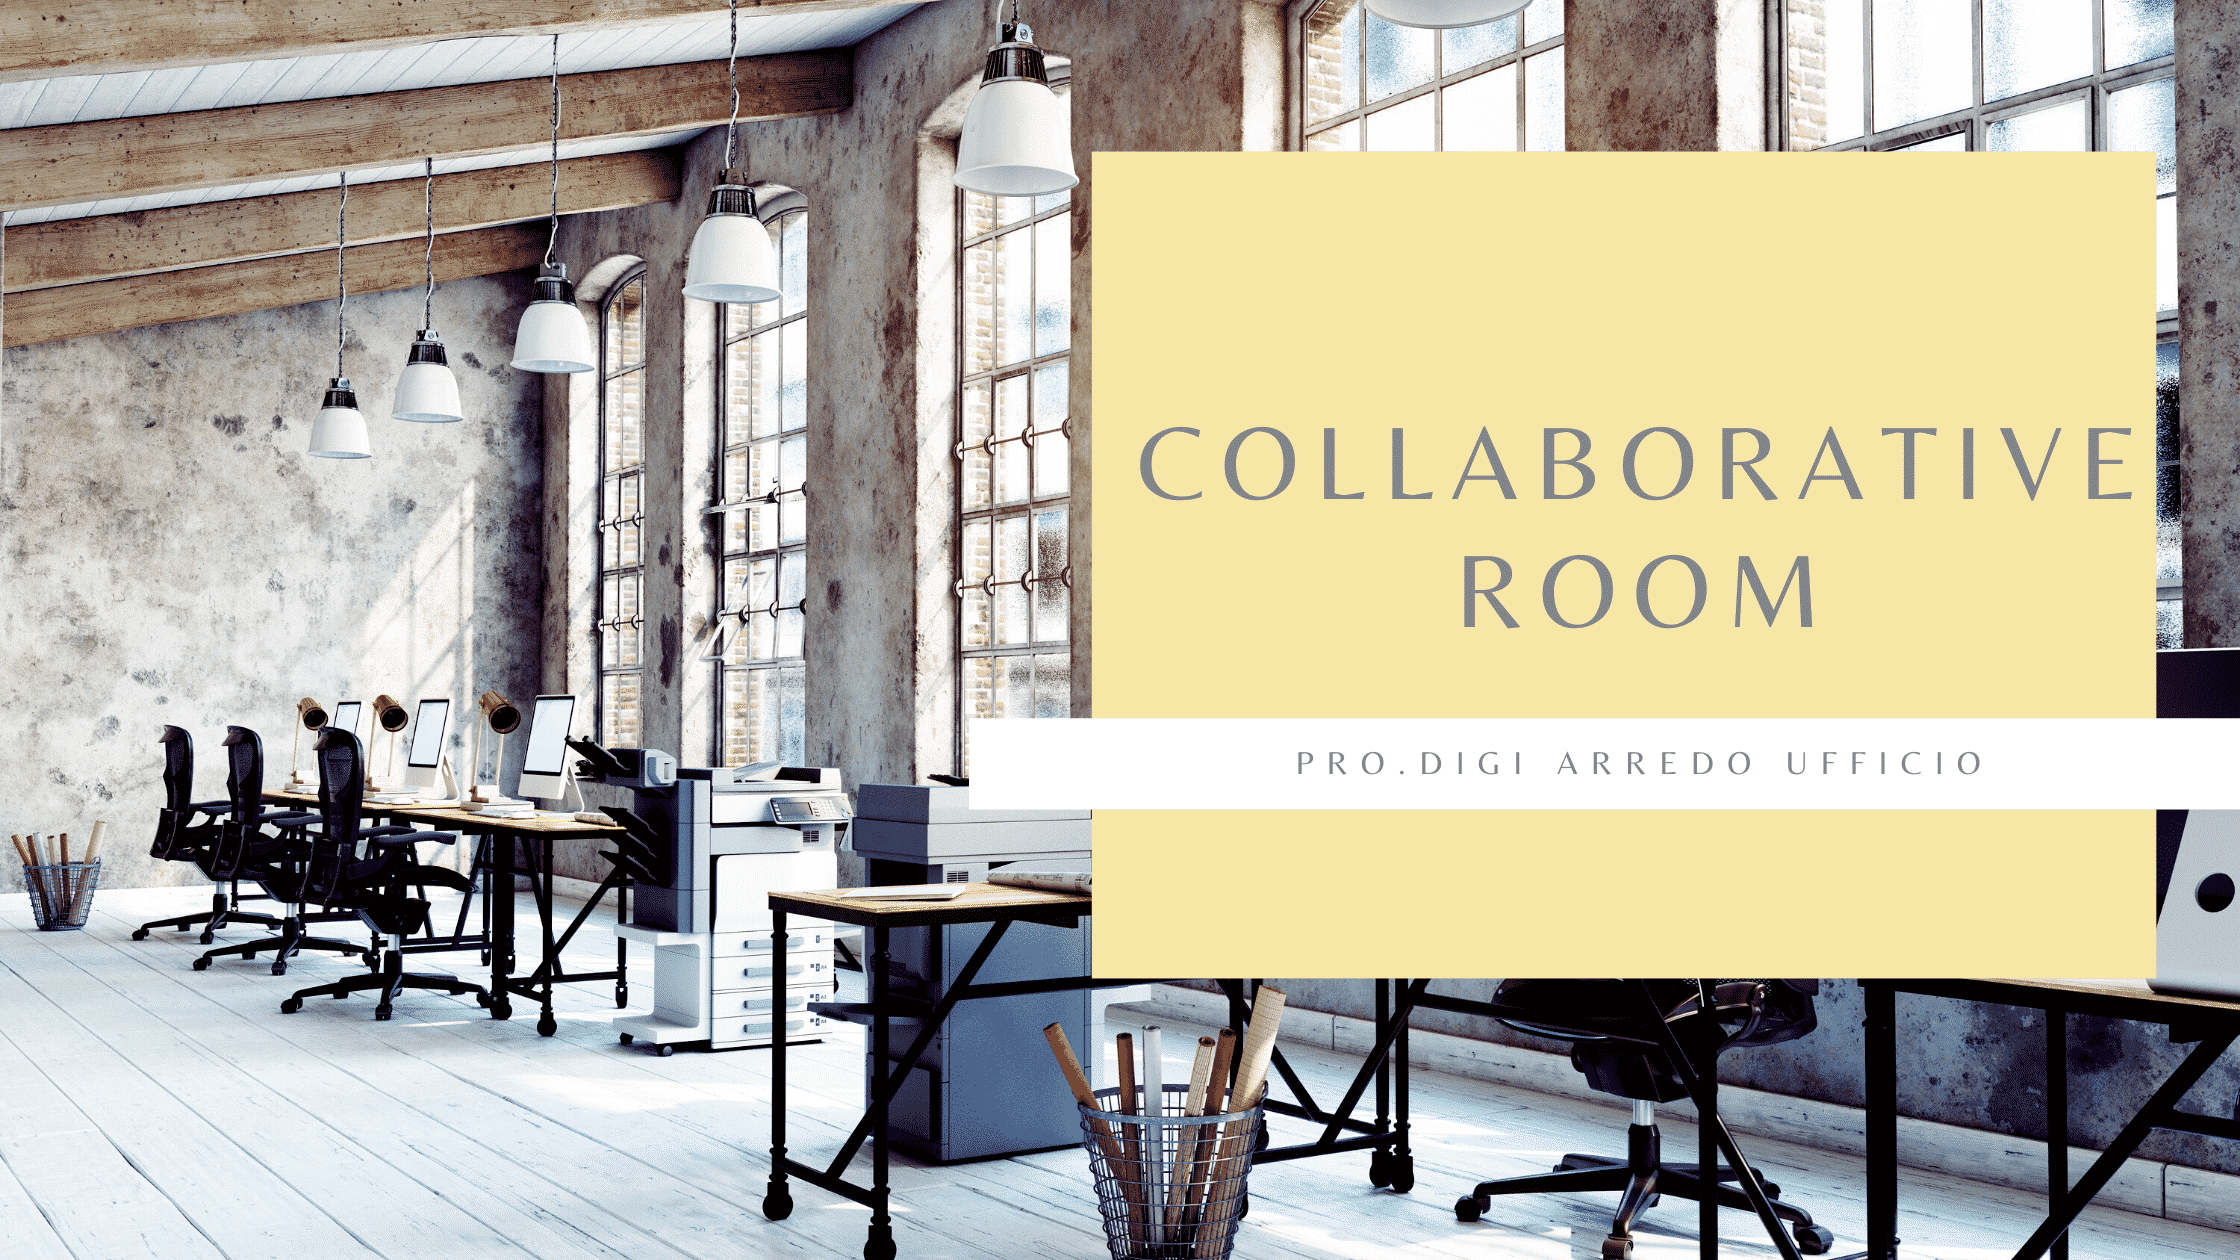 La collaborative room, che cos’è e qual è la sua funzione principale.